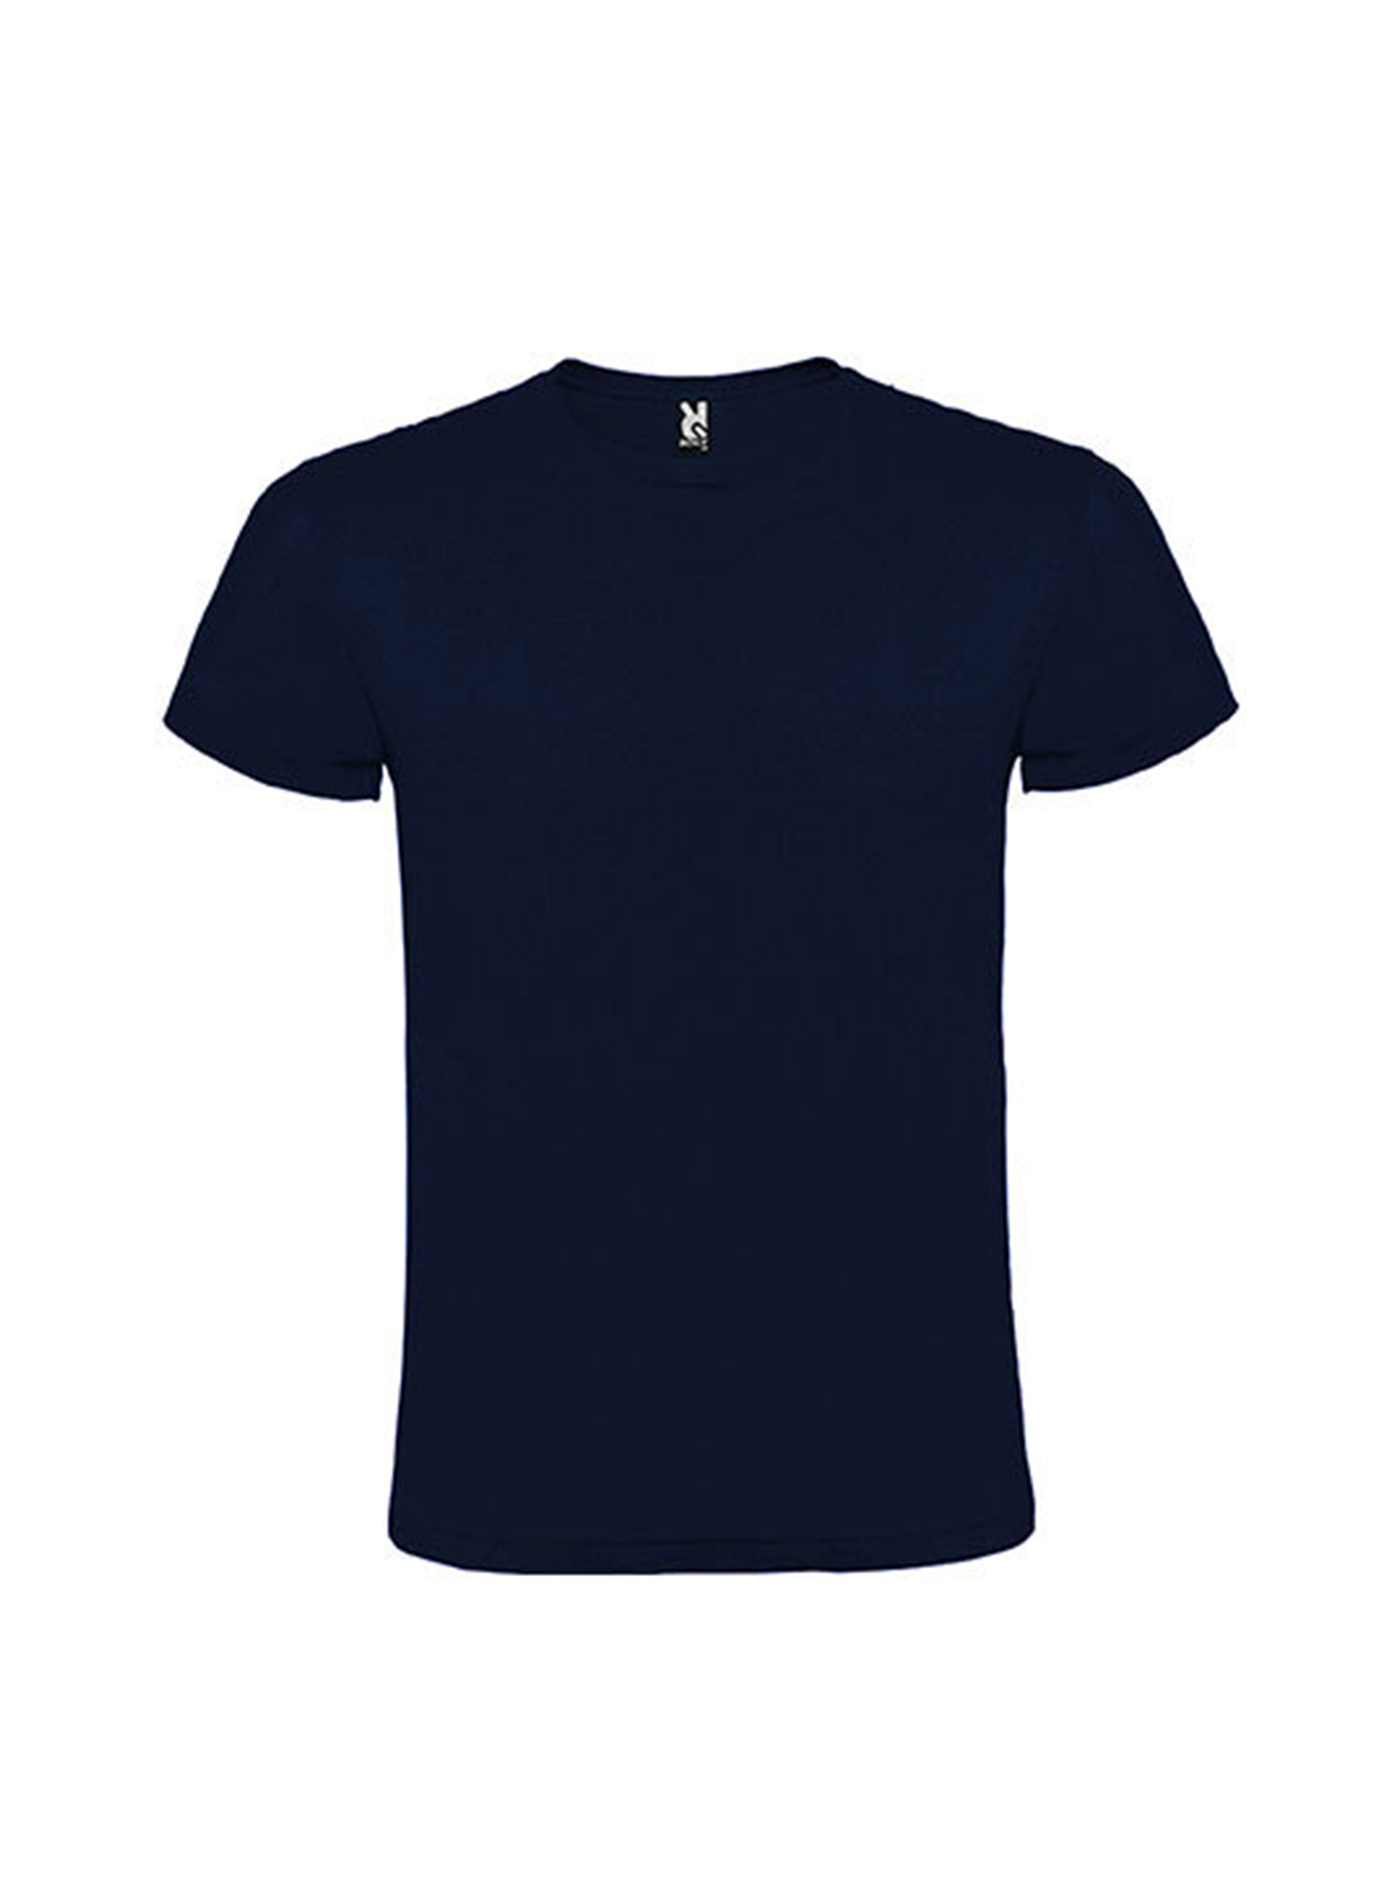 Pánské tričko Roly Atomic - Námořnická modrá S